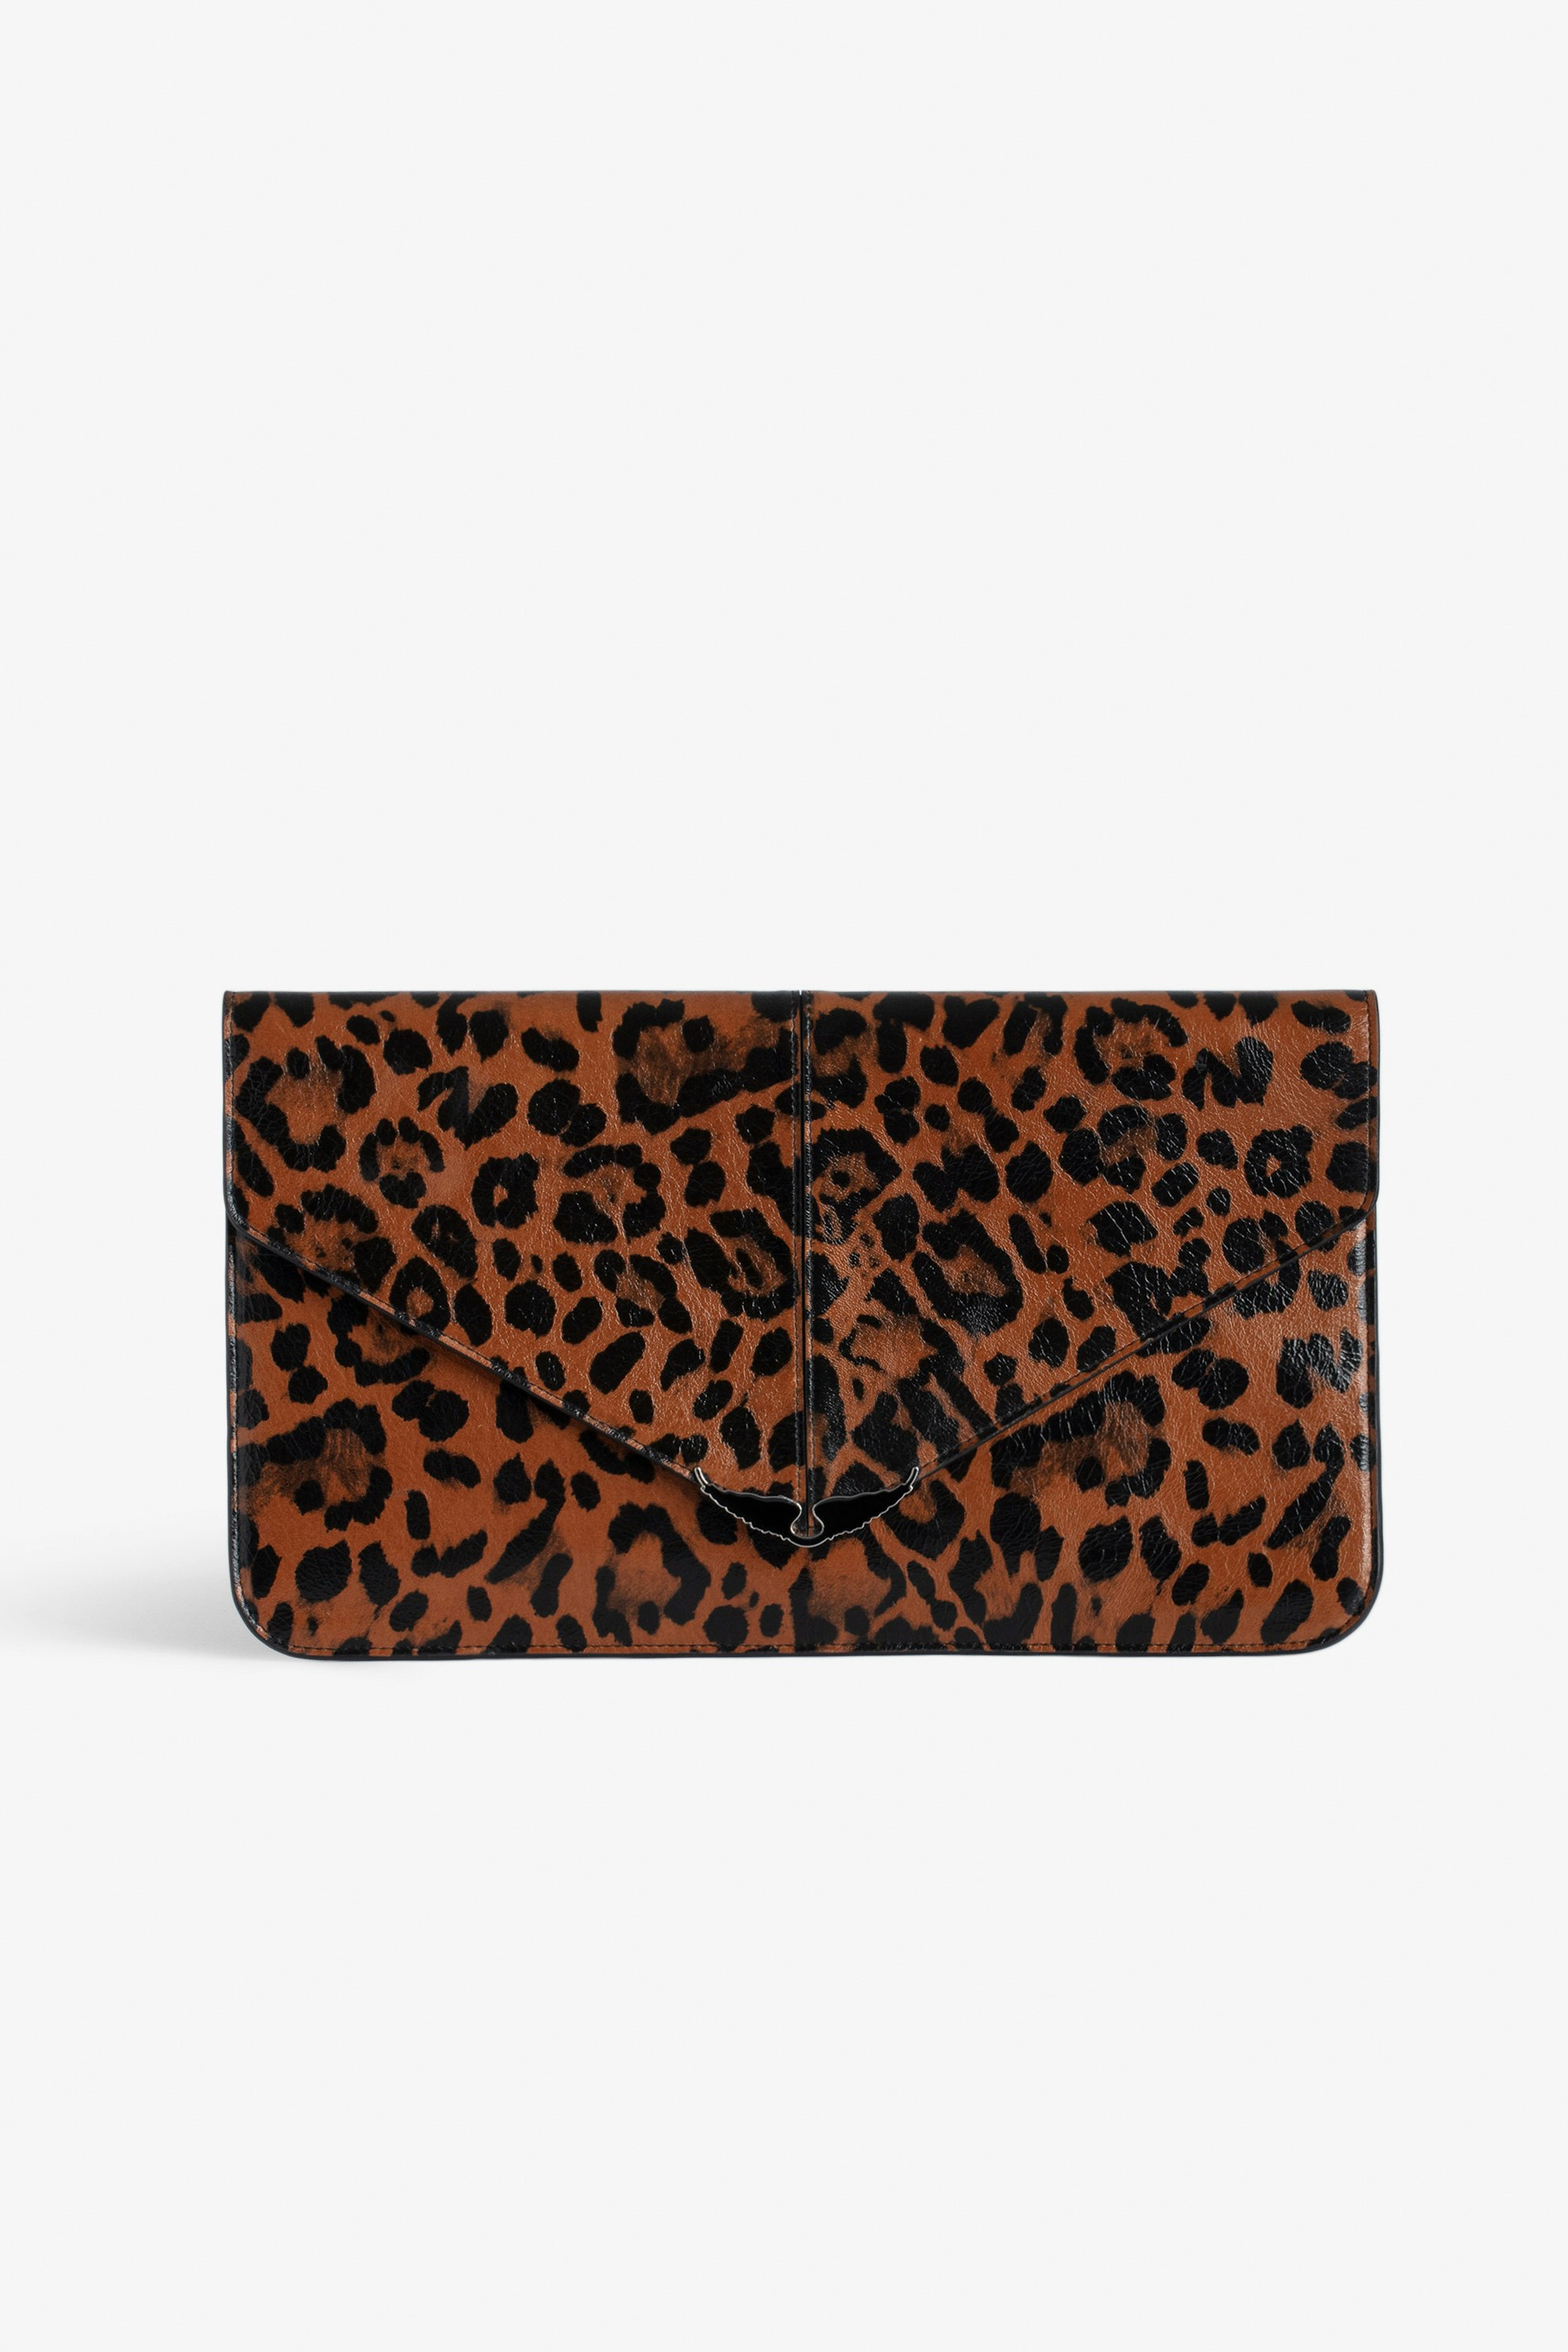 Bolso de mano Borderline Leopardo Bolso de mano tipo sobre marrón de charol estampado de leopardo con colgante de alas para mujer.